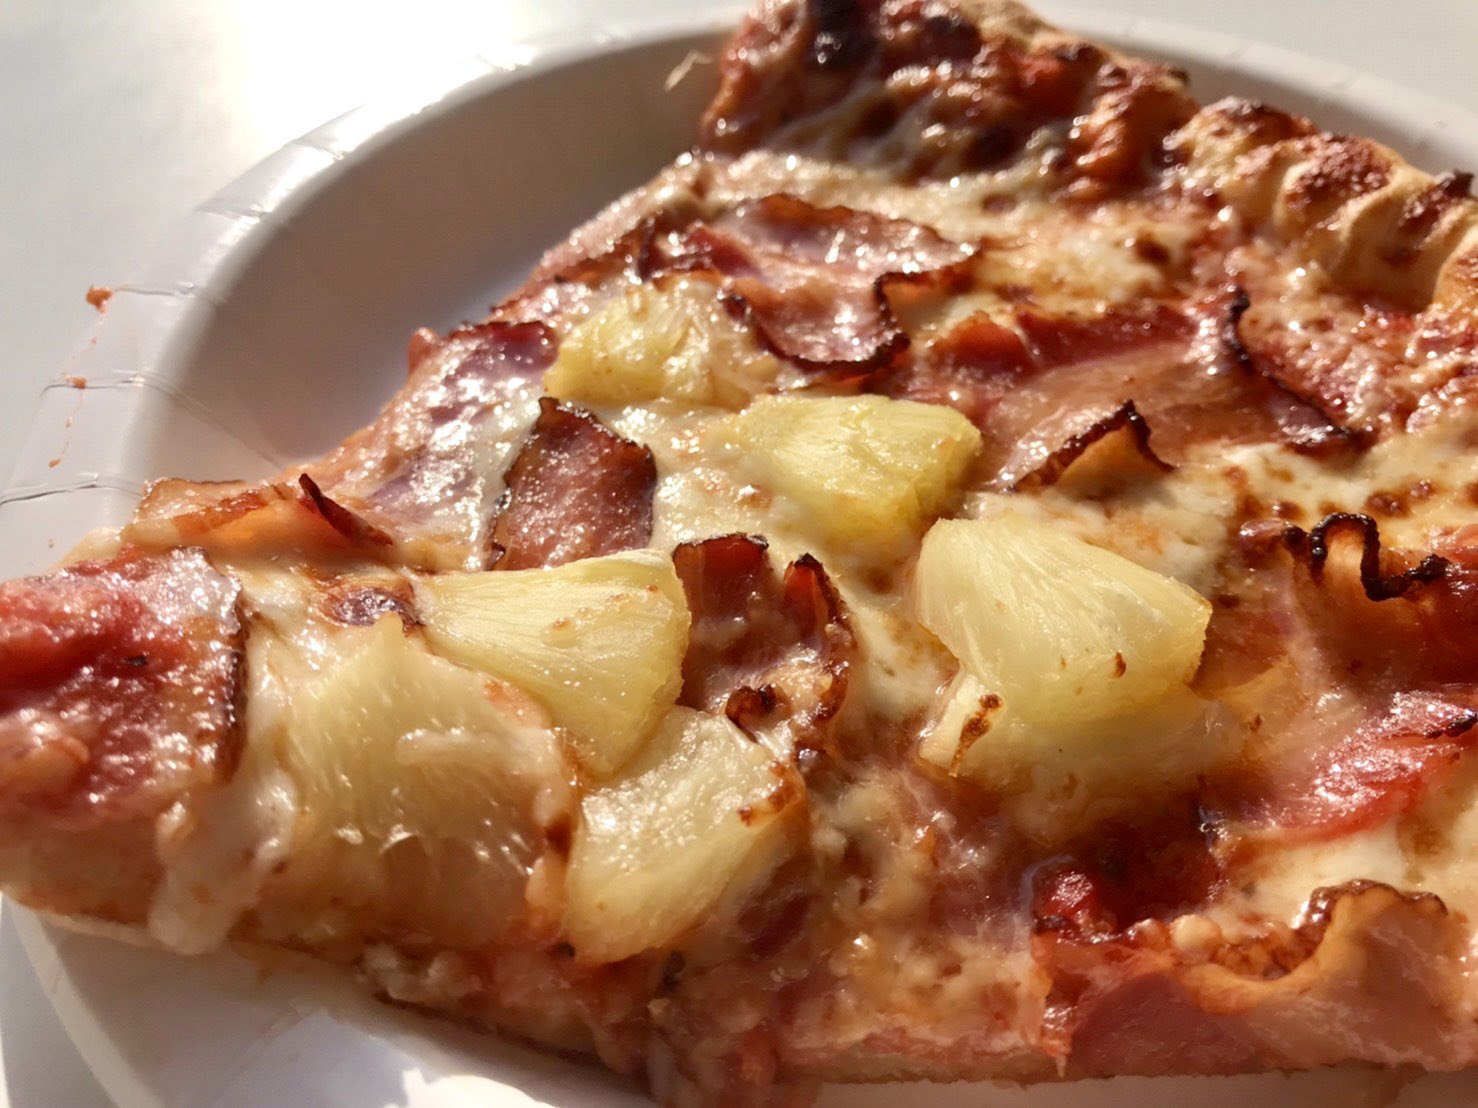 Twitter 上的 コストコ節子 フードコートにハワイアンピザ出てましたー ベーコン チーズの塩味に パイナップルからあふれ出る甘みがすごく合う T Co Y1wbwisbsp Twitter